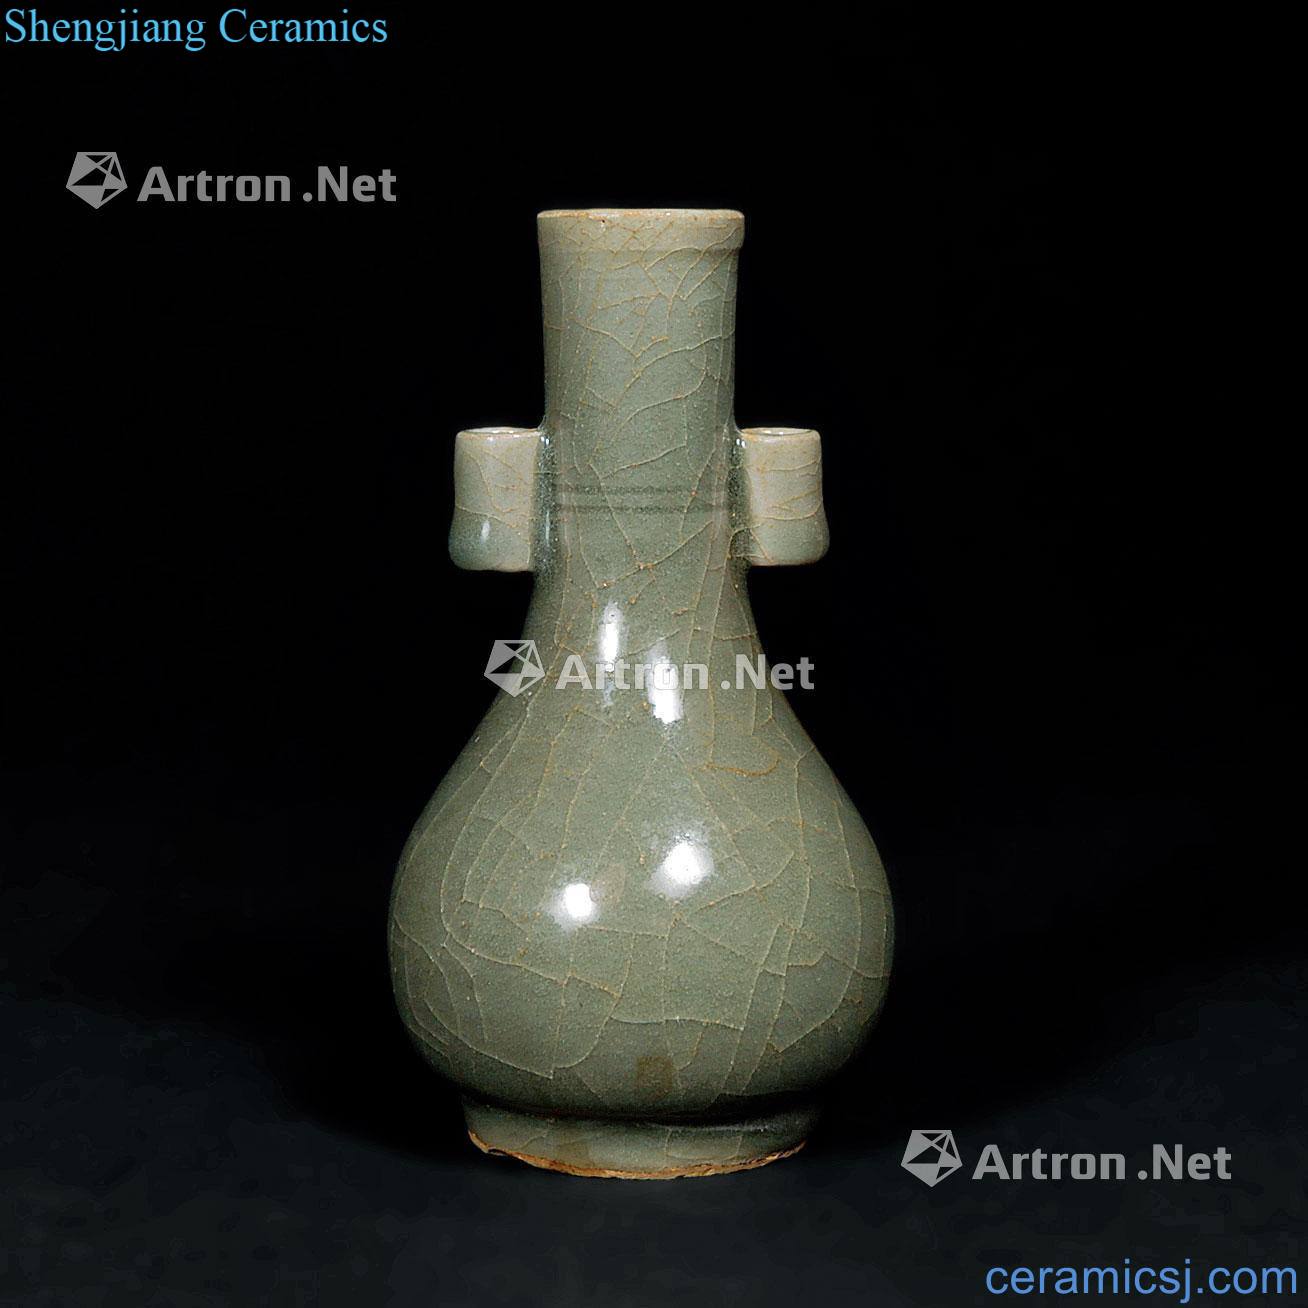 Yuan dynasty celadon double ears